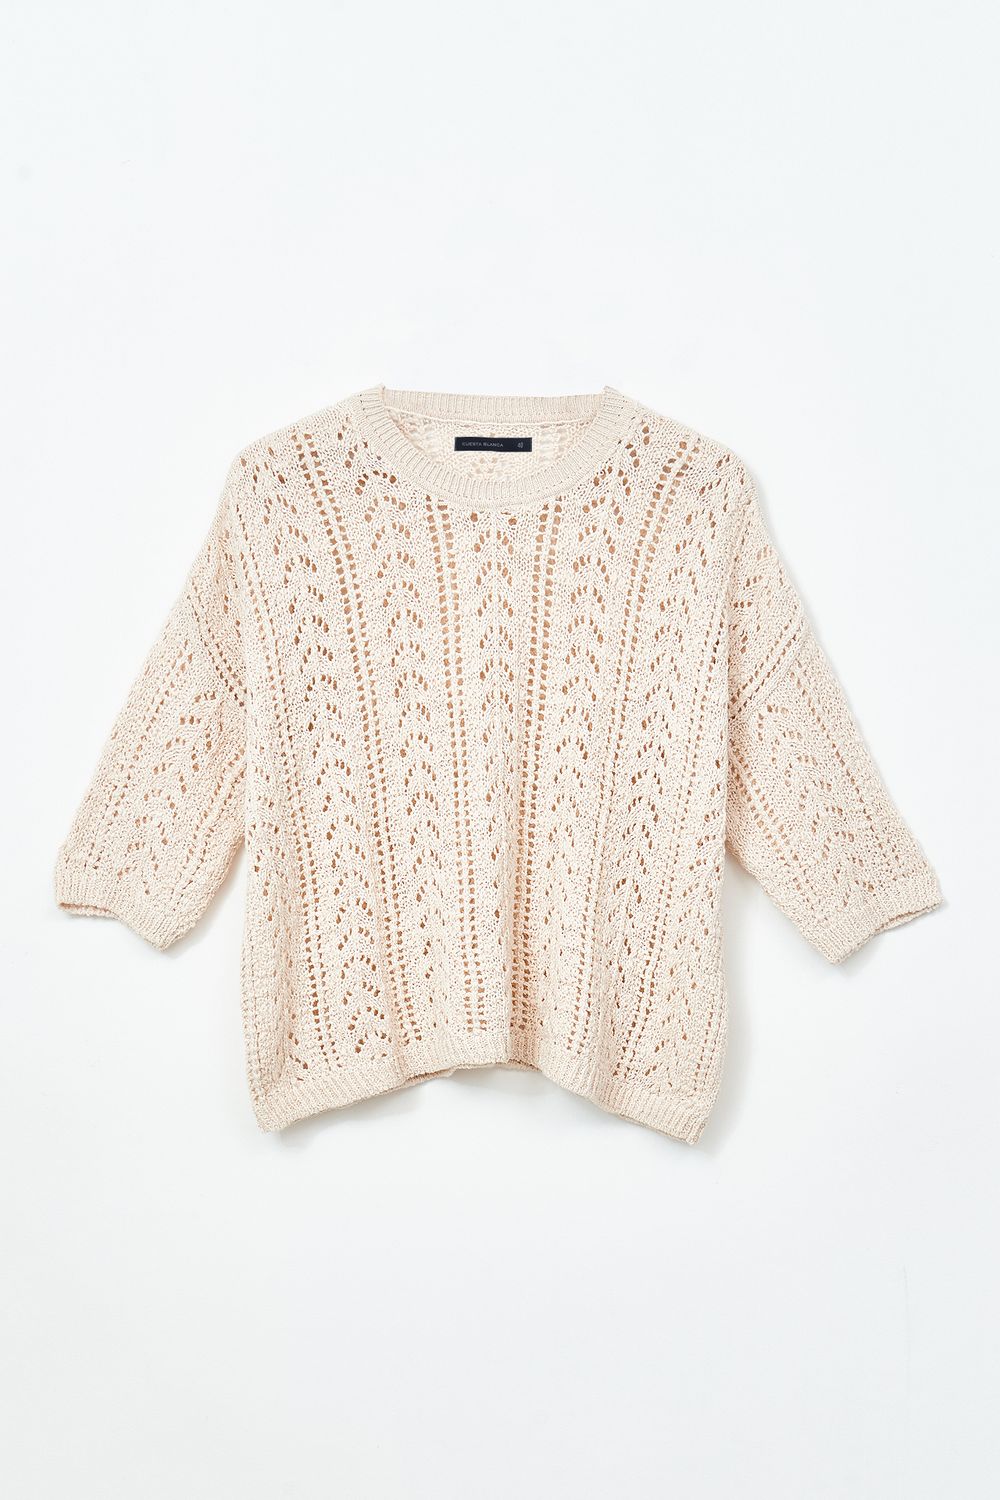 Sweater-Amazona-Crudo-44